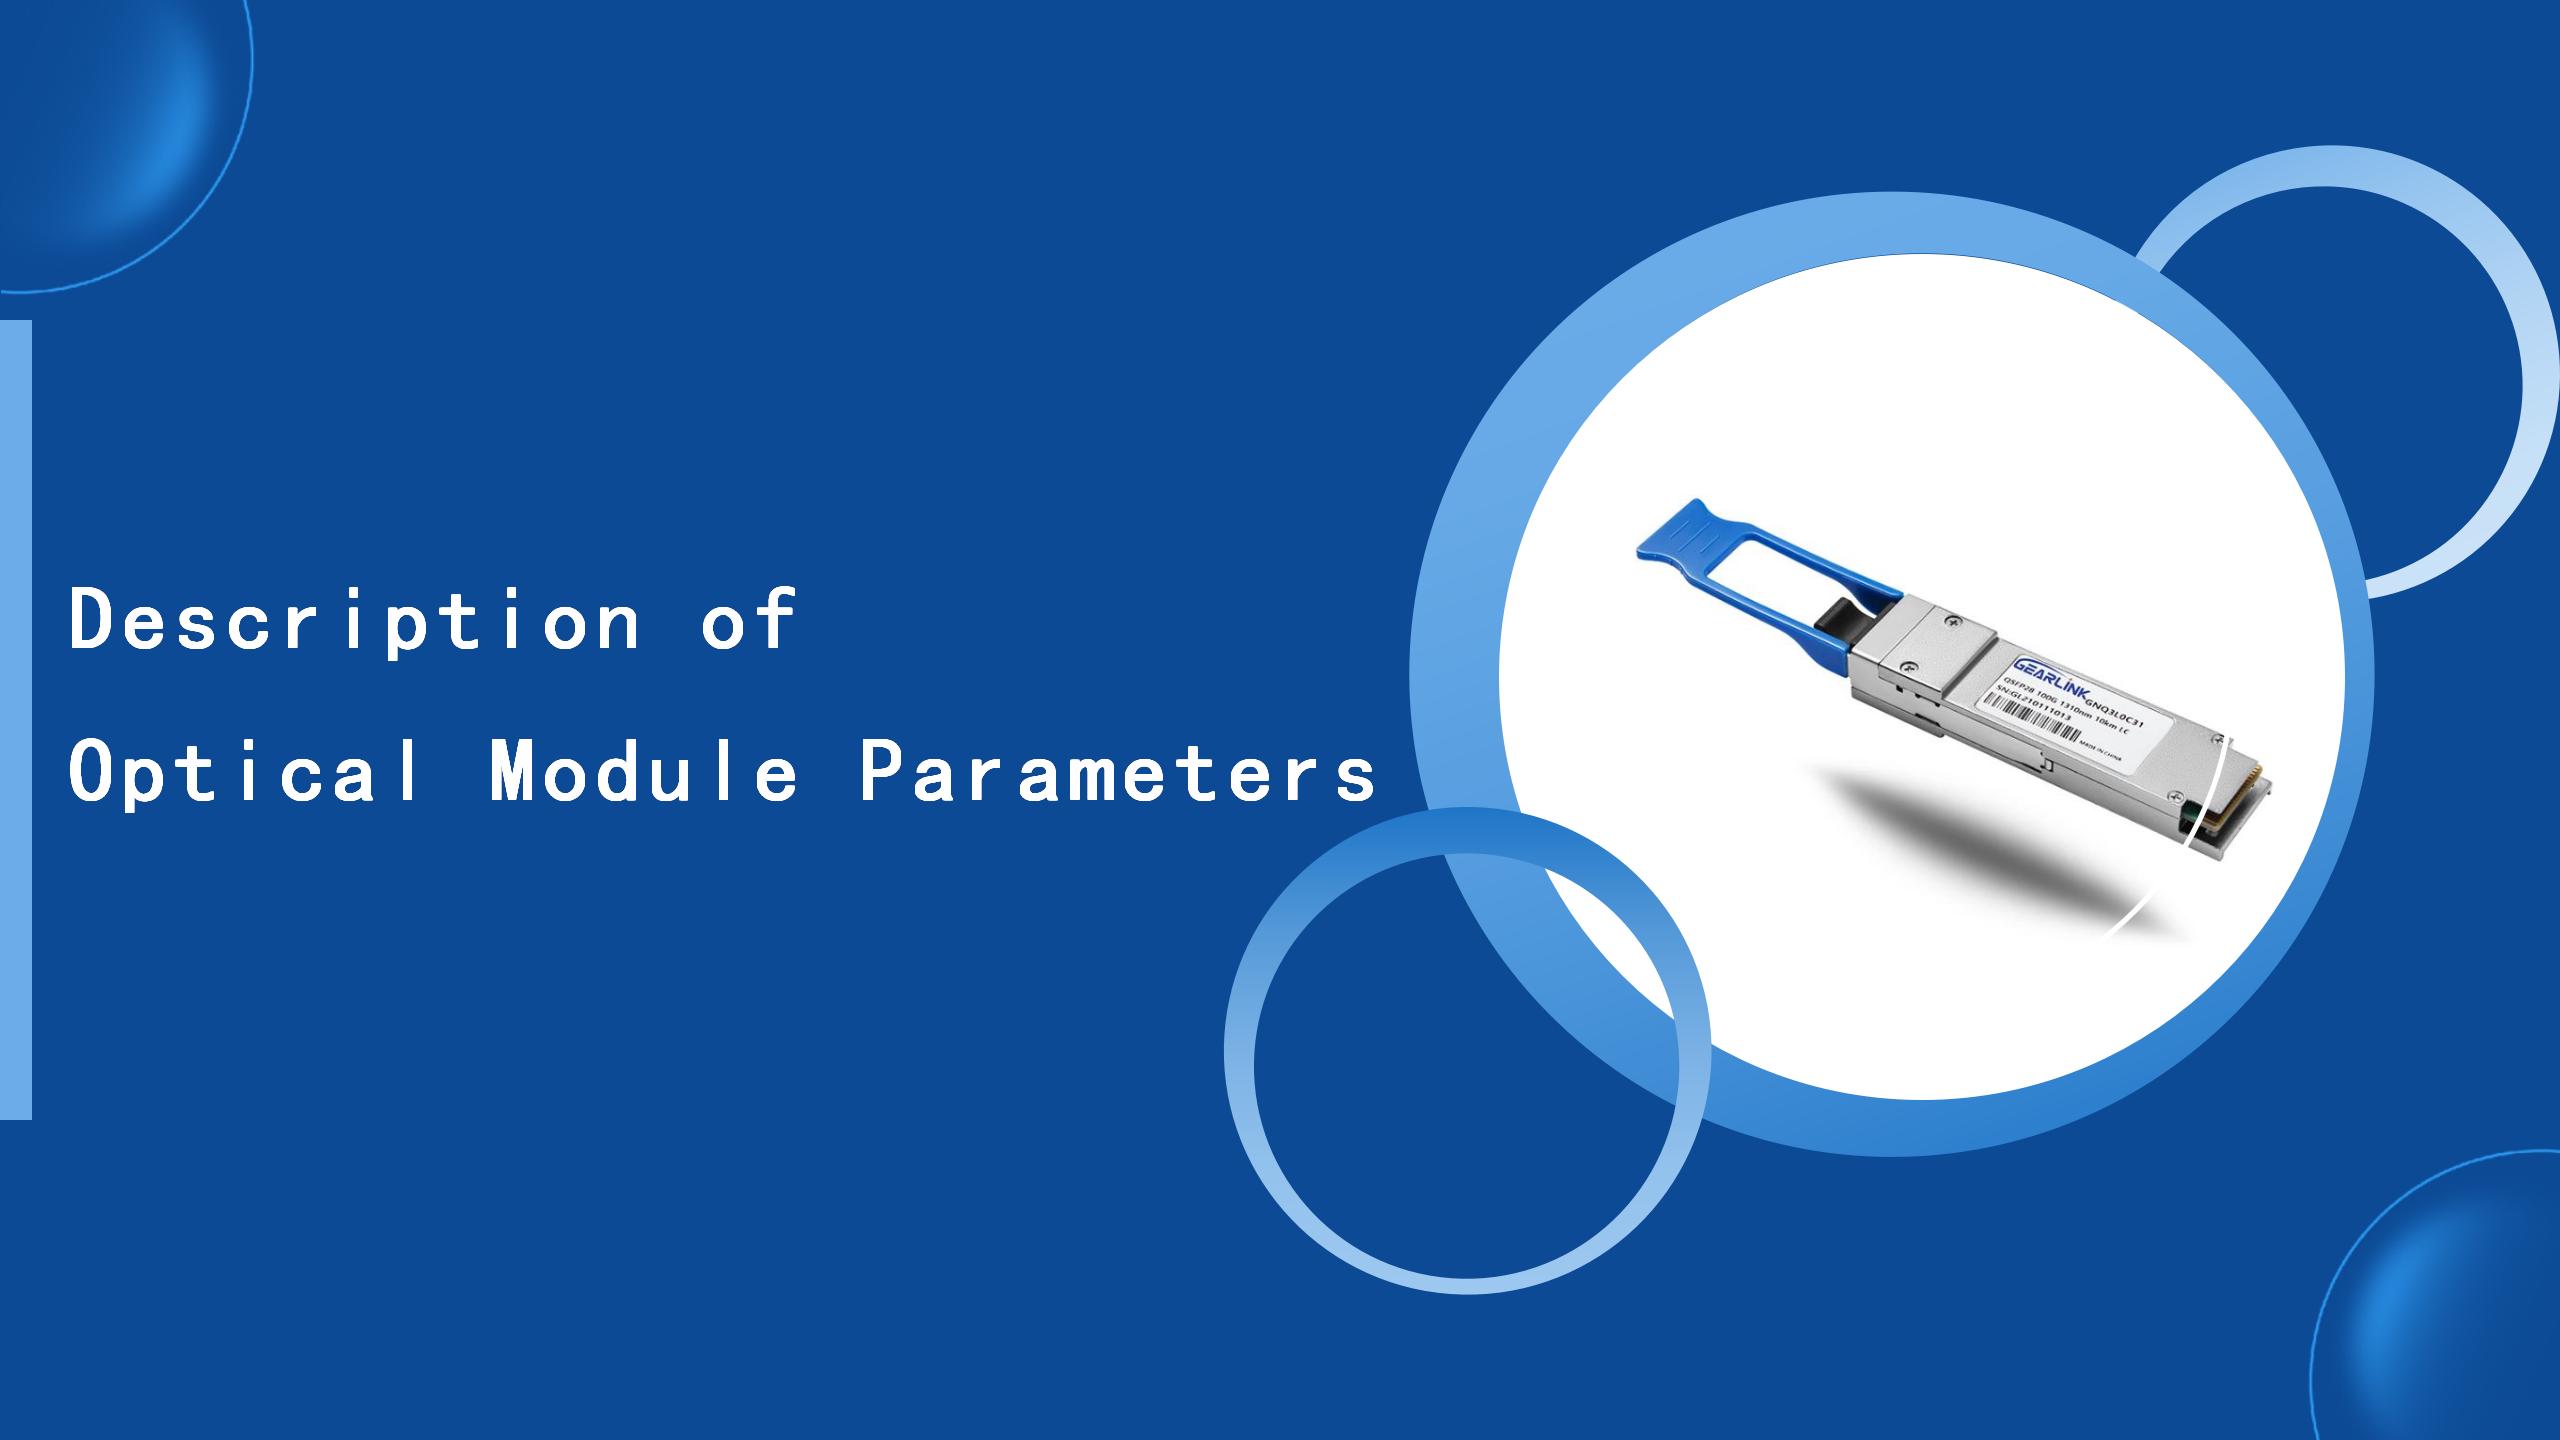 Description of Optical Module Parameters